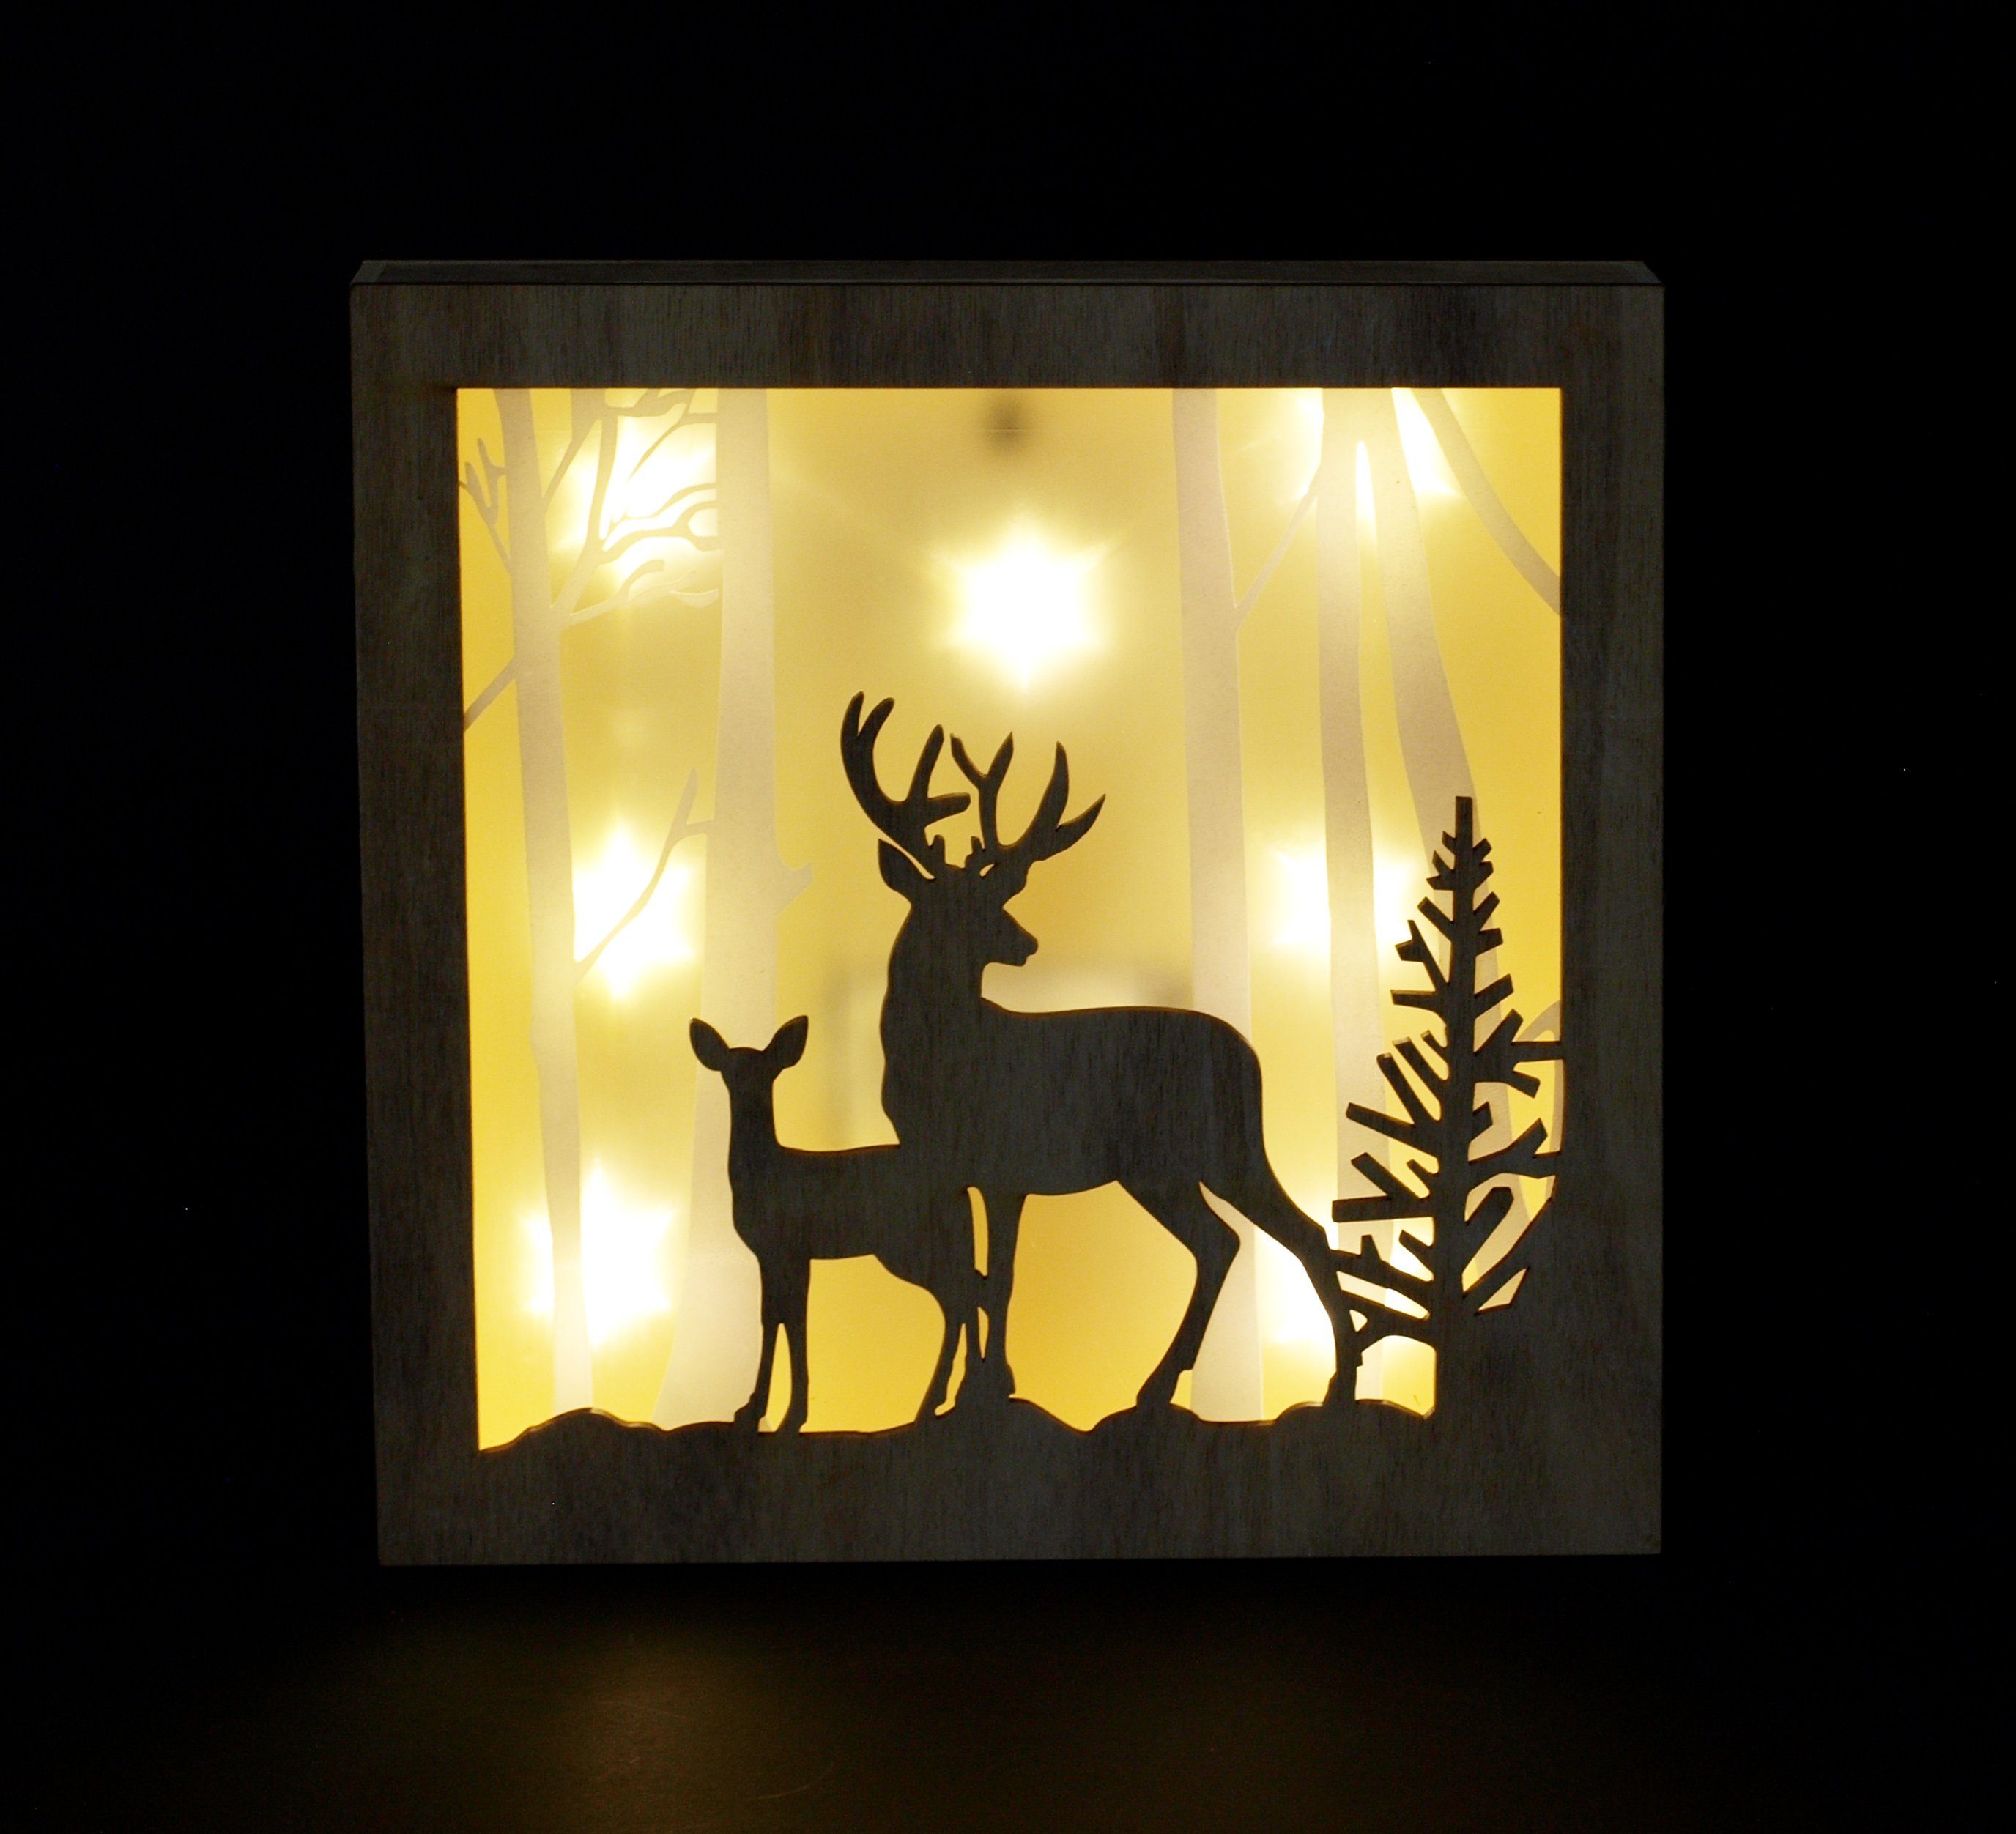 LED, Hologrammeffekt, mit Winterwald, Bild Batteriebetrieb 3D 7 Weihnachtsszene DEGAMO